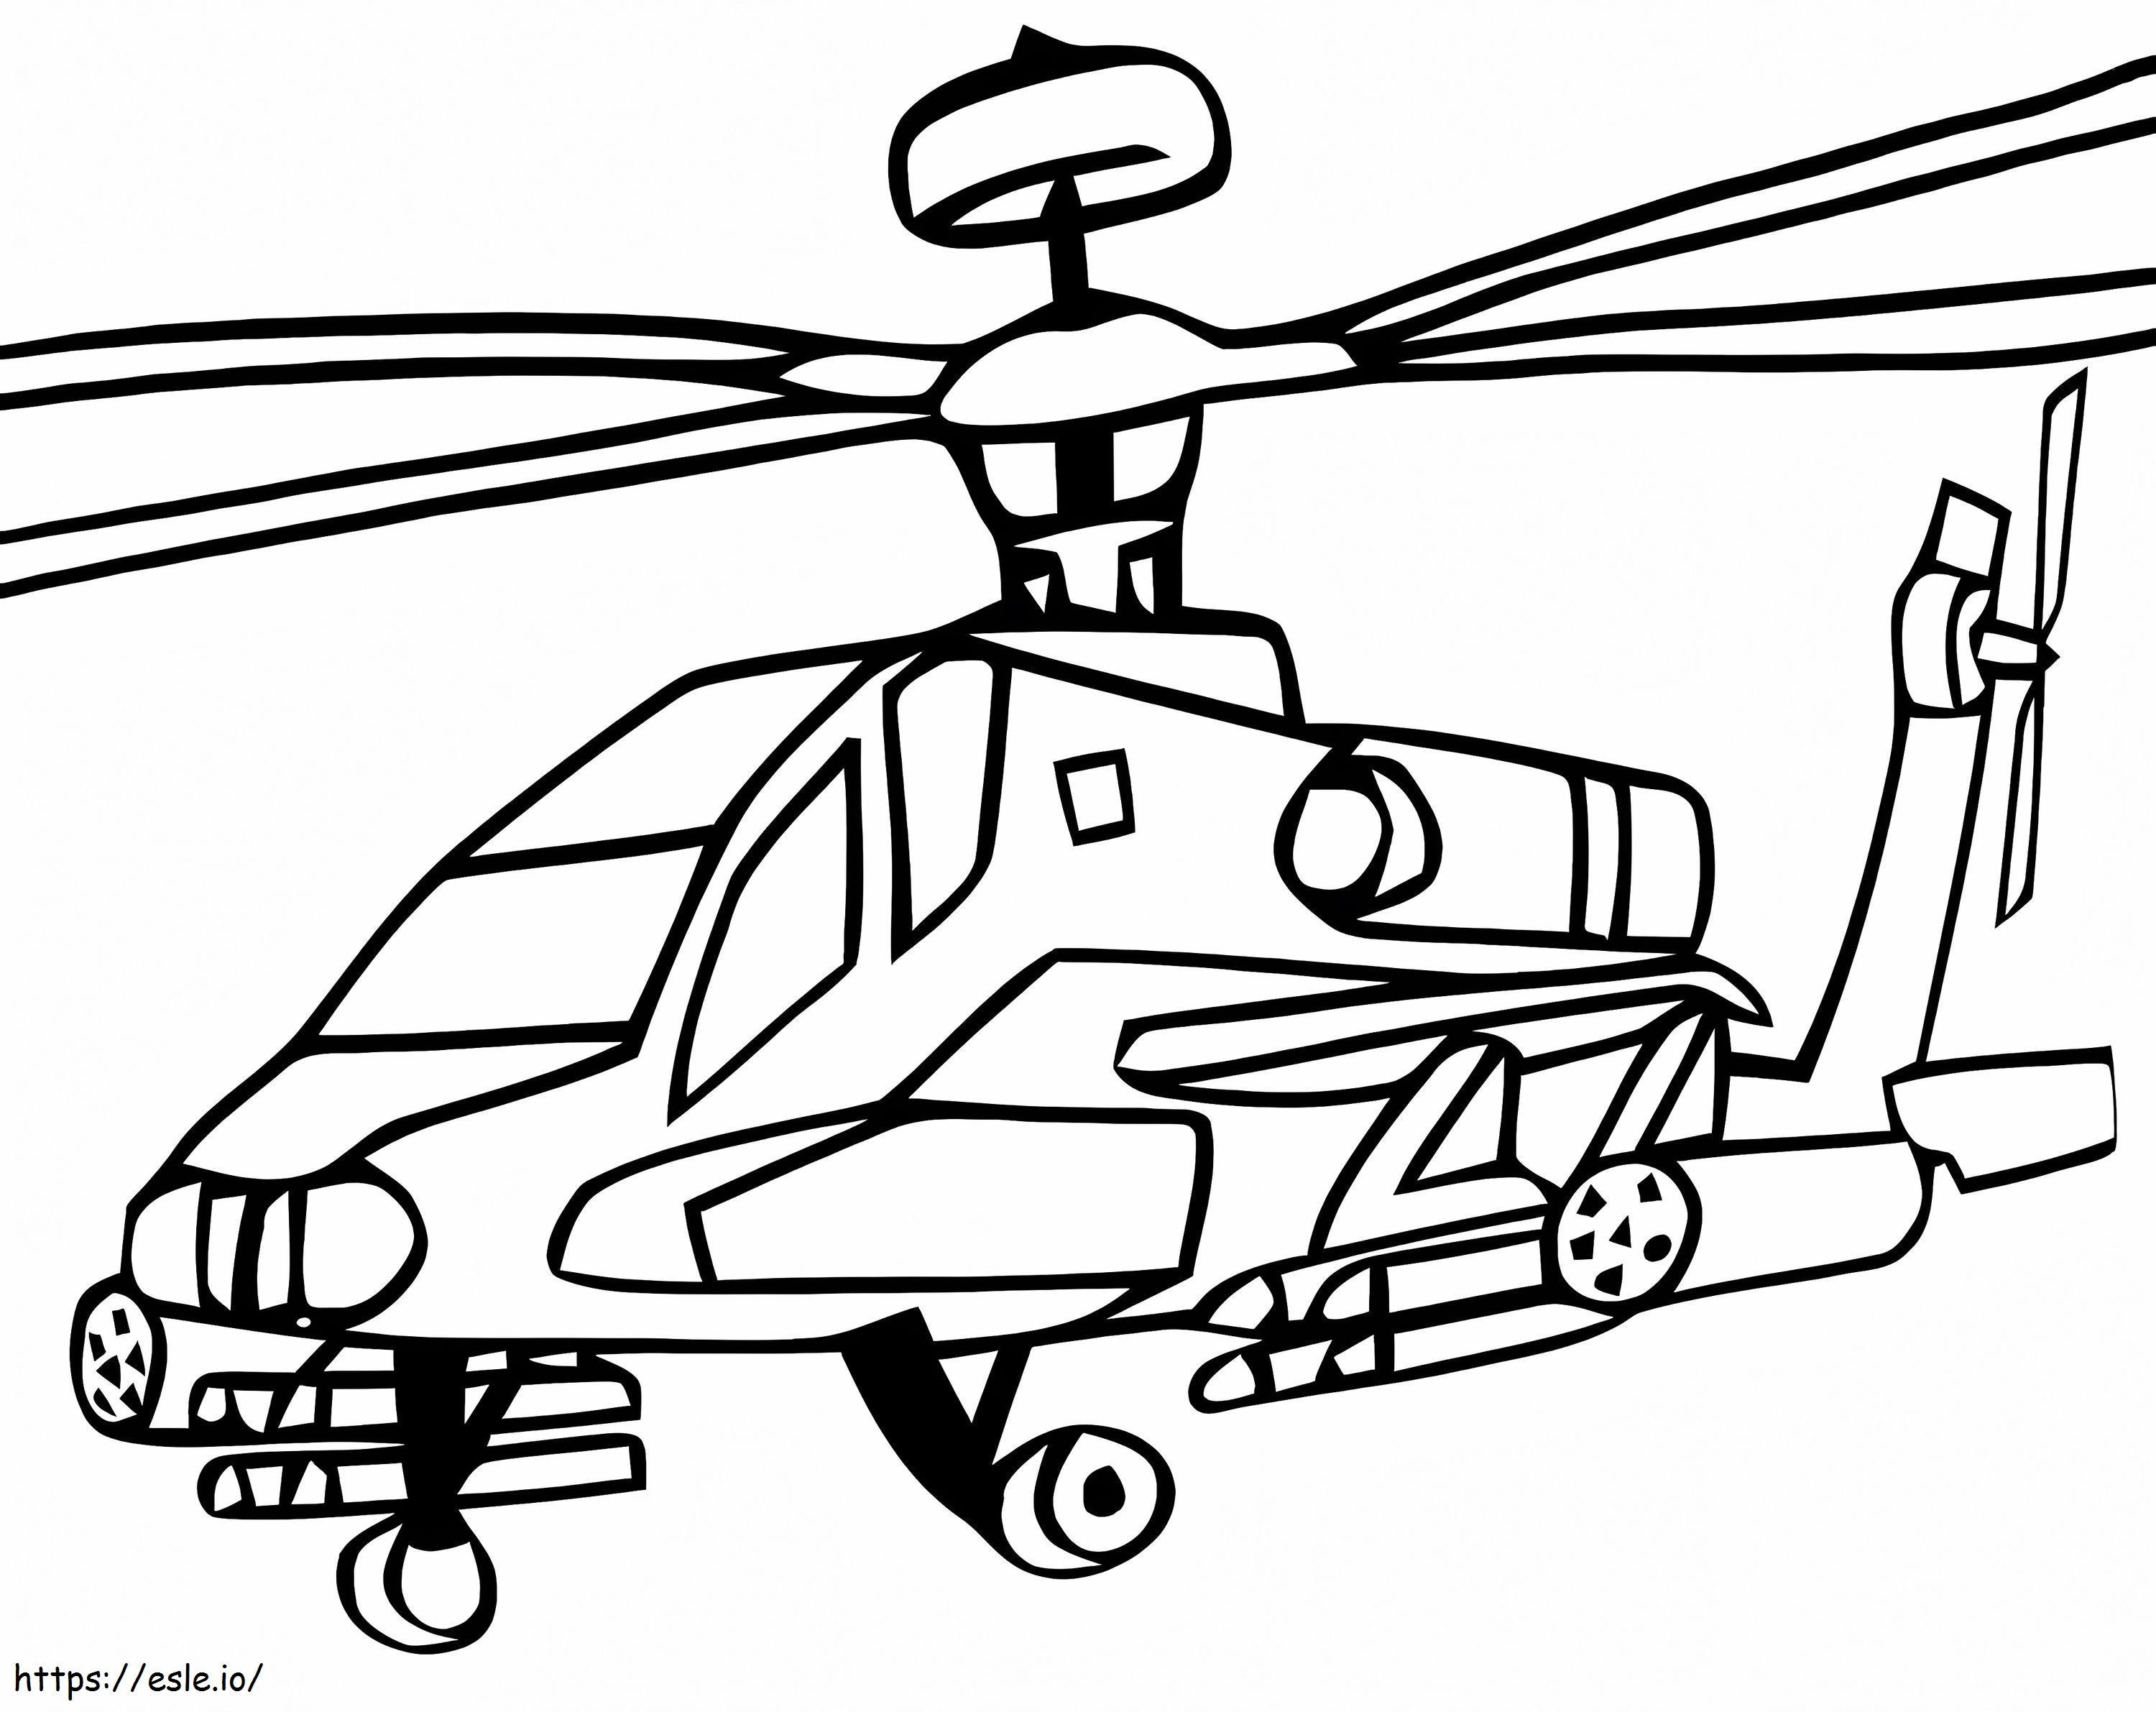 Helicoptero Schattig kleurplaat kleurplaat